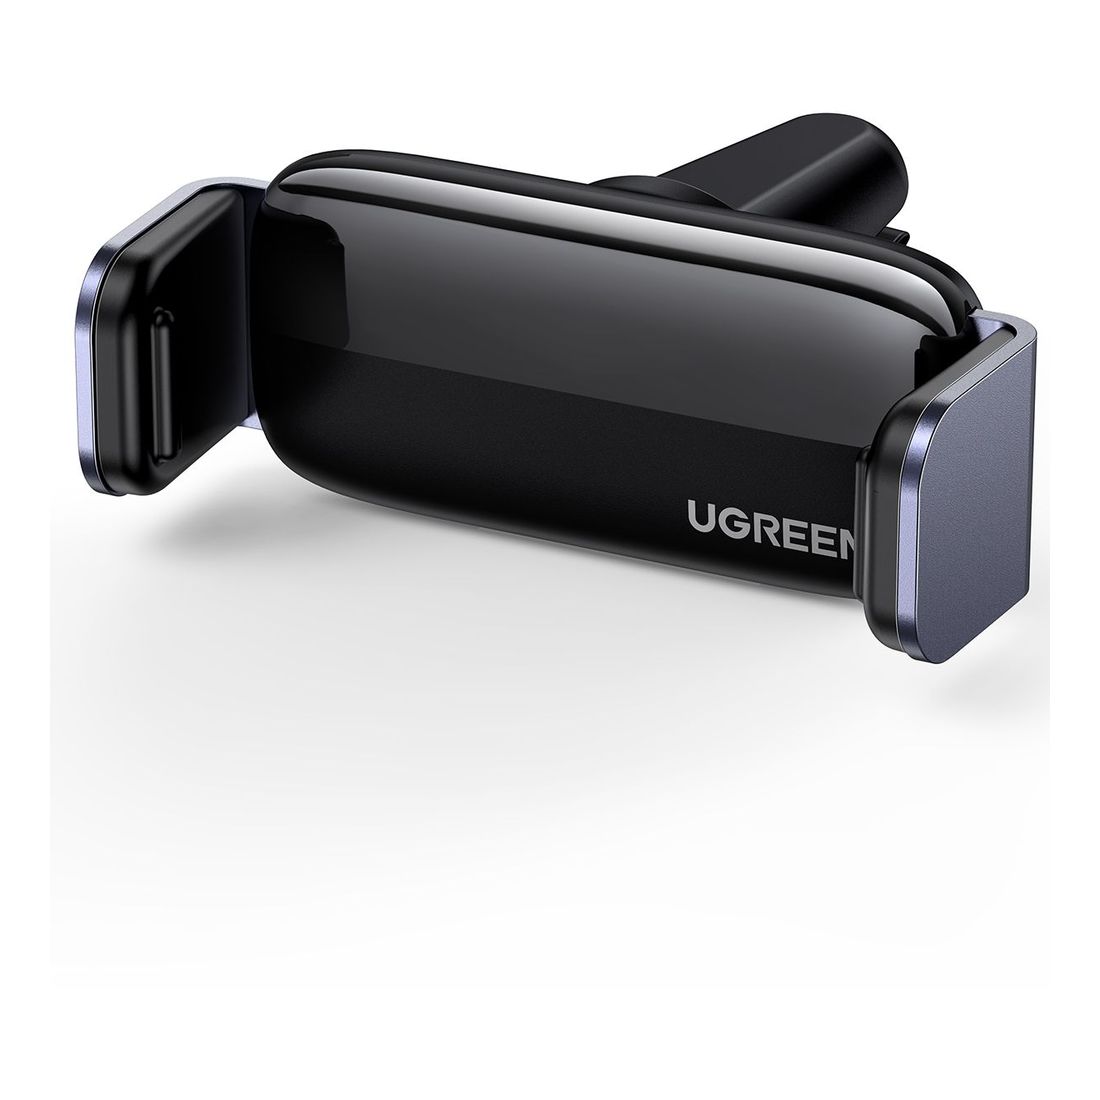 UGreen Air Vent Car Mount Smartphone Holder - Black